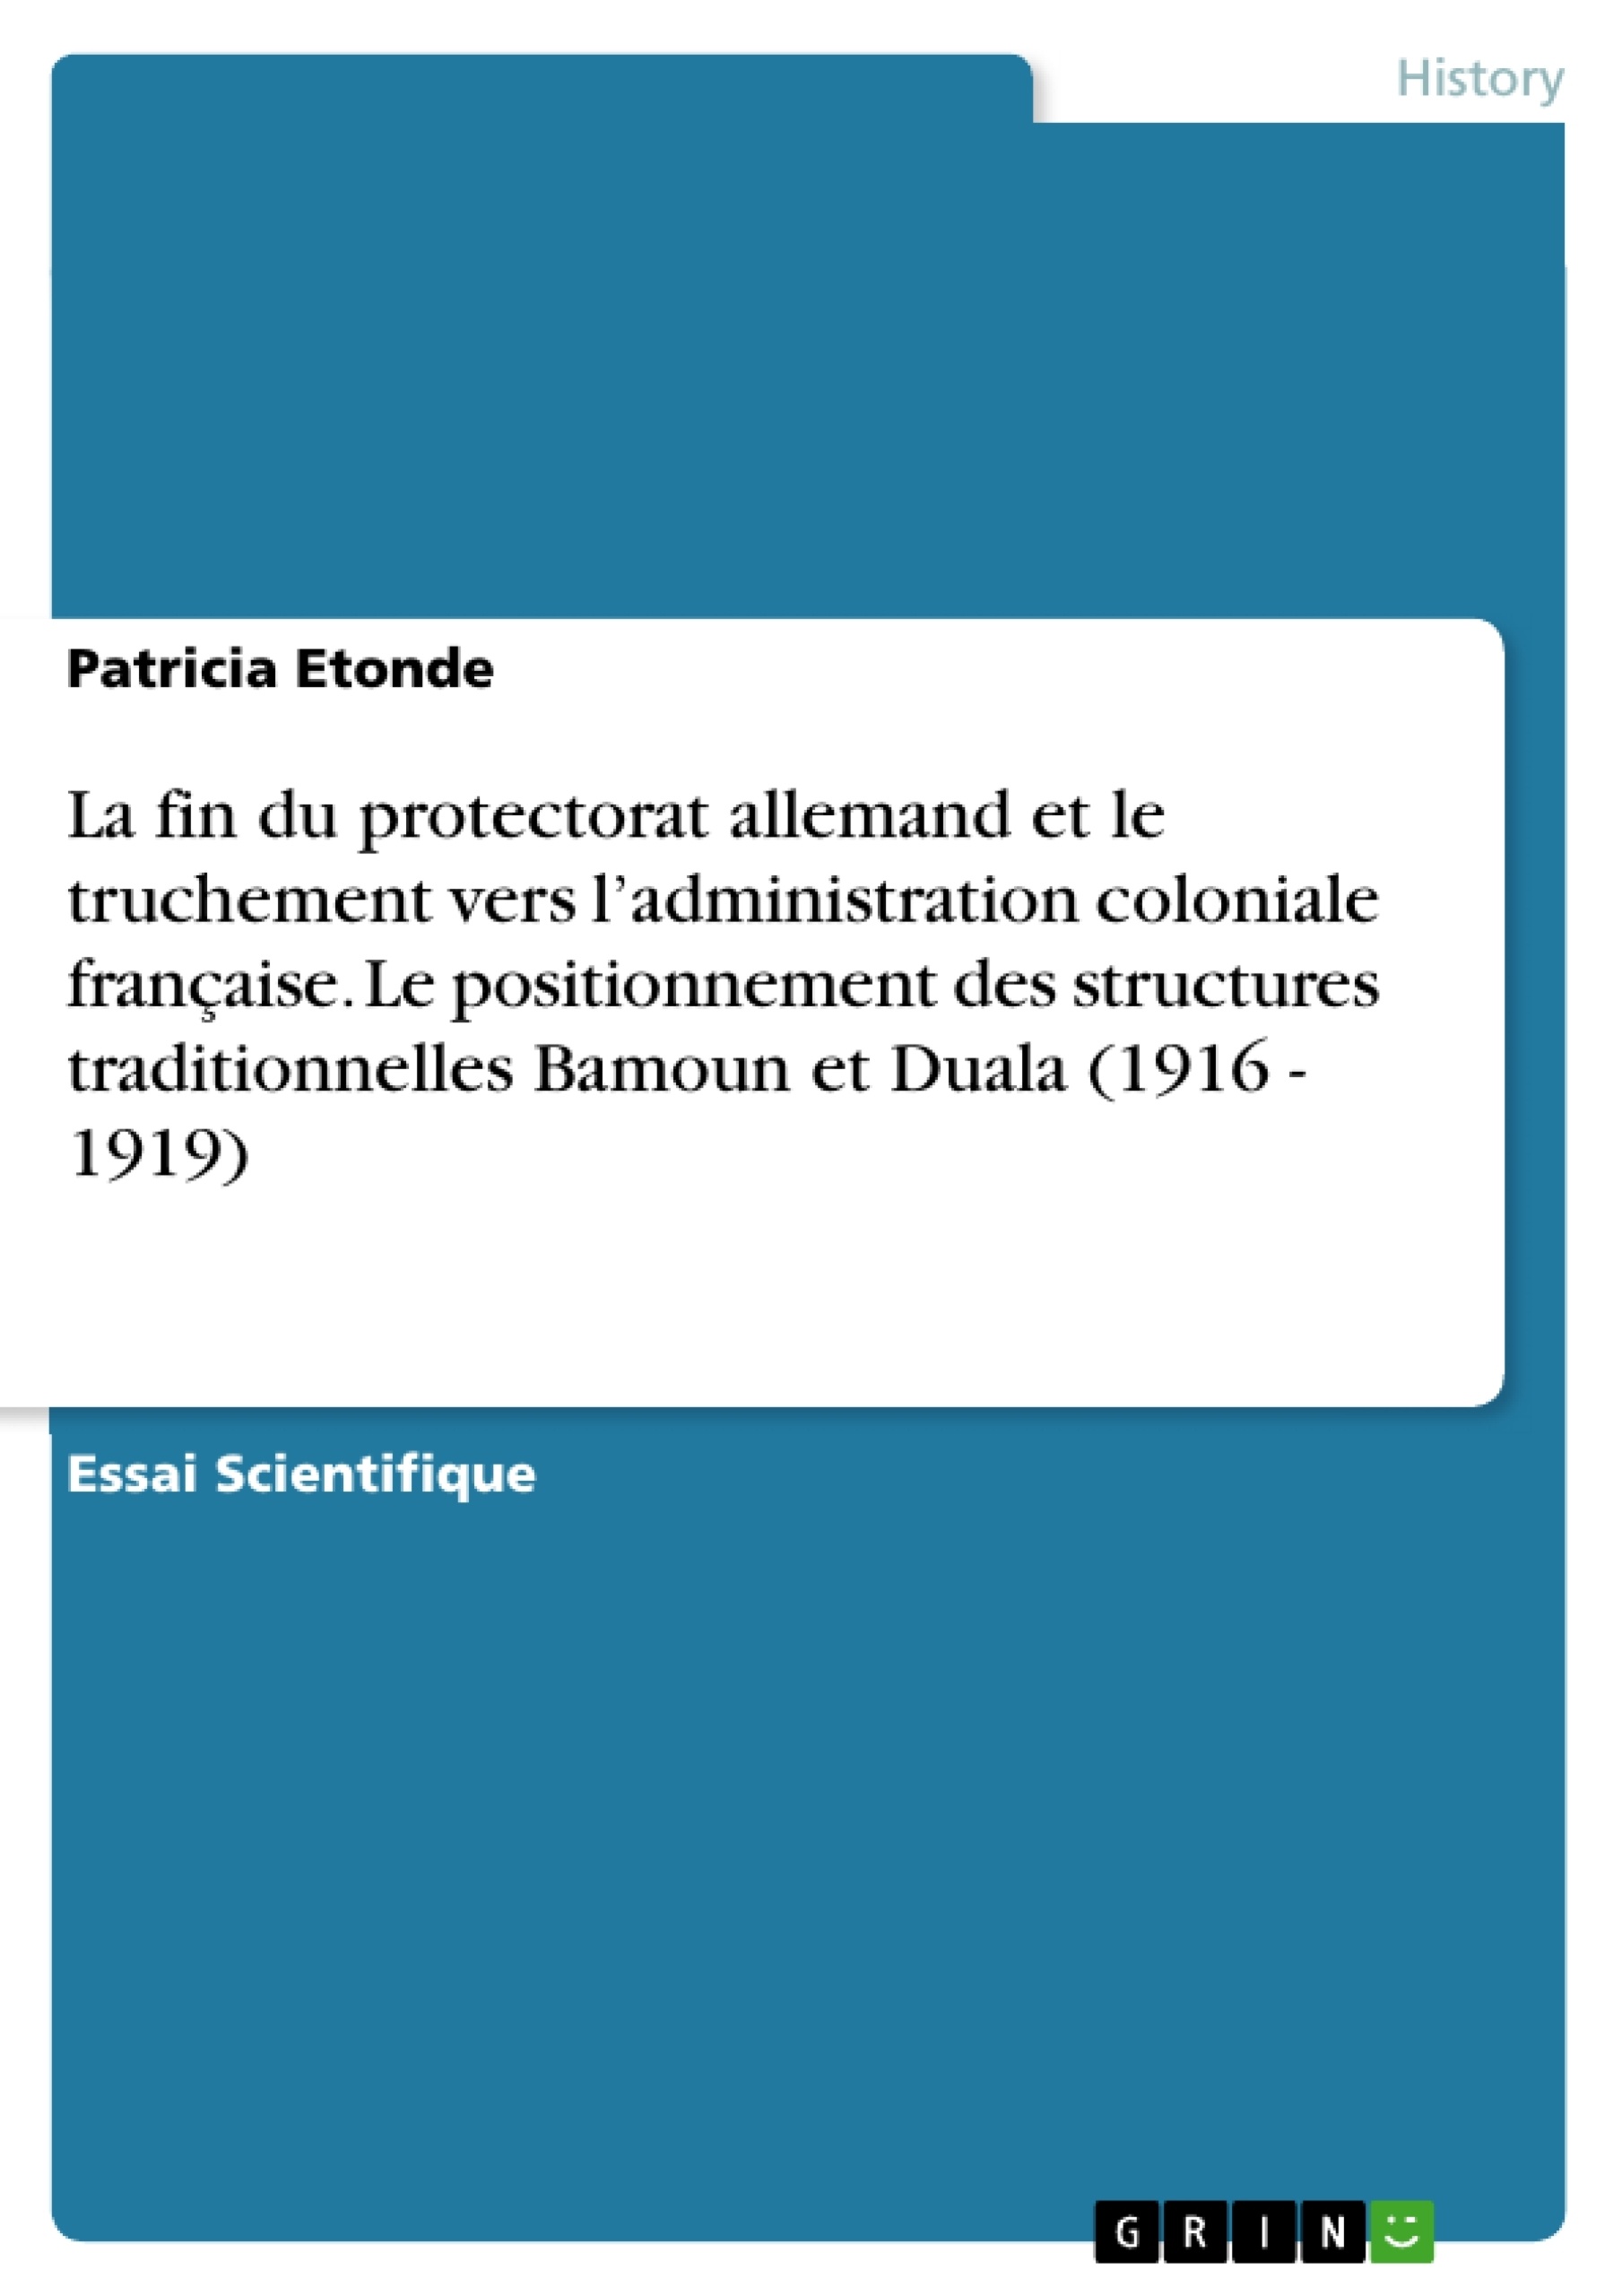 Titre: La fin du protectorat allemand et le truchement vers l’administration coloniale française. Le positionnement des structures traditionnelles Bamoun et Duala (1916 - 1919)